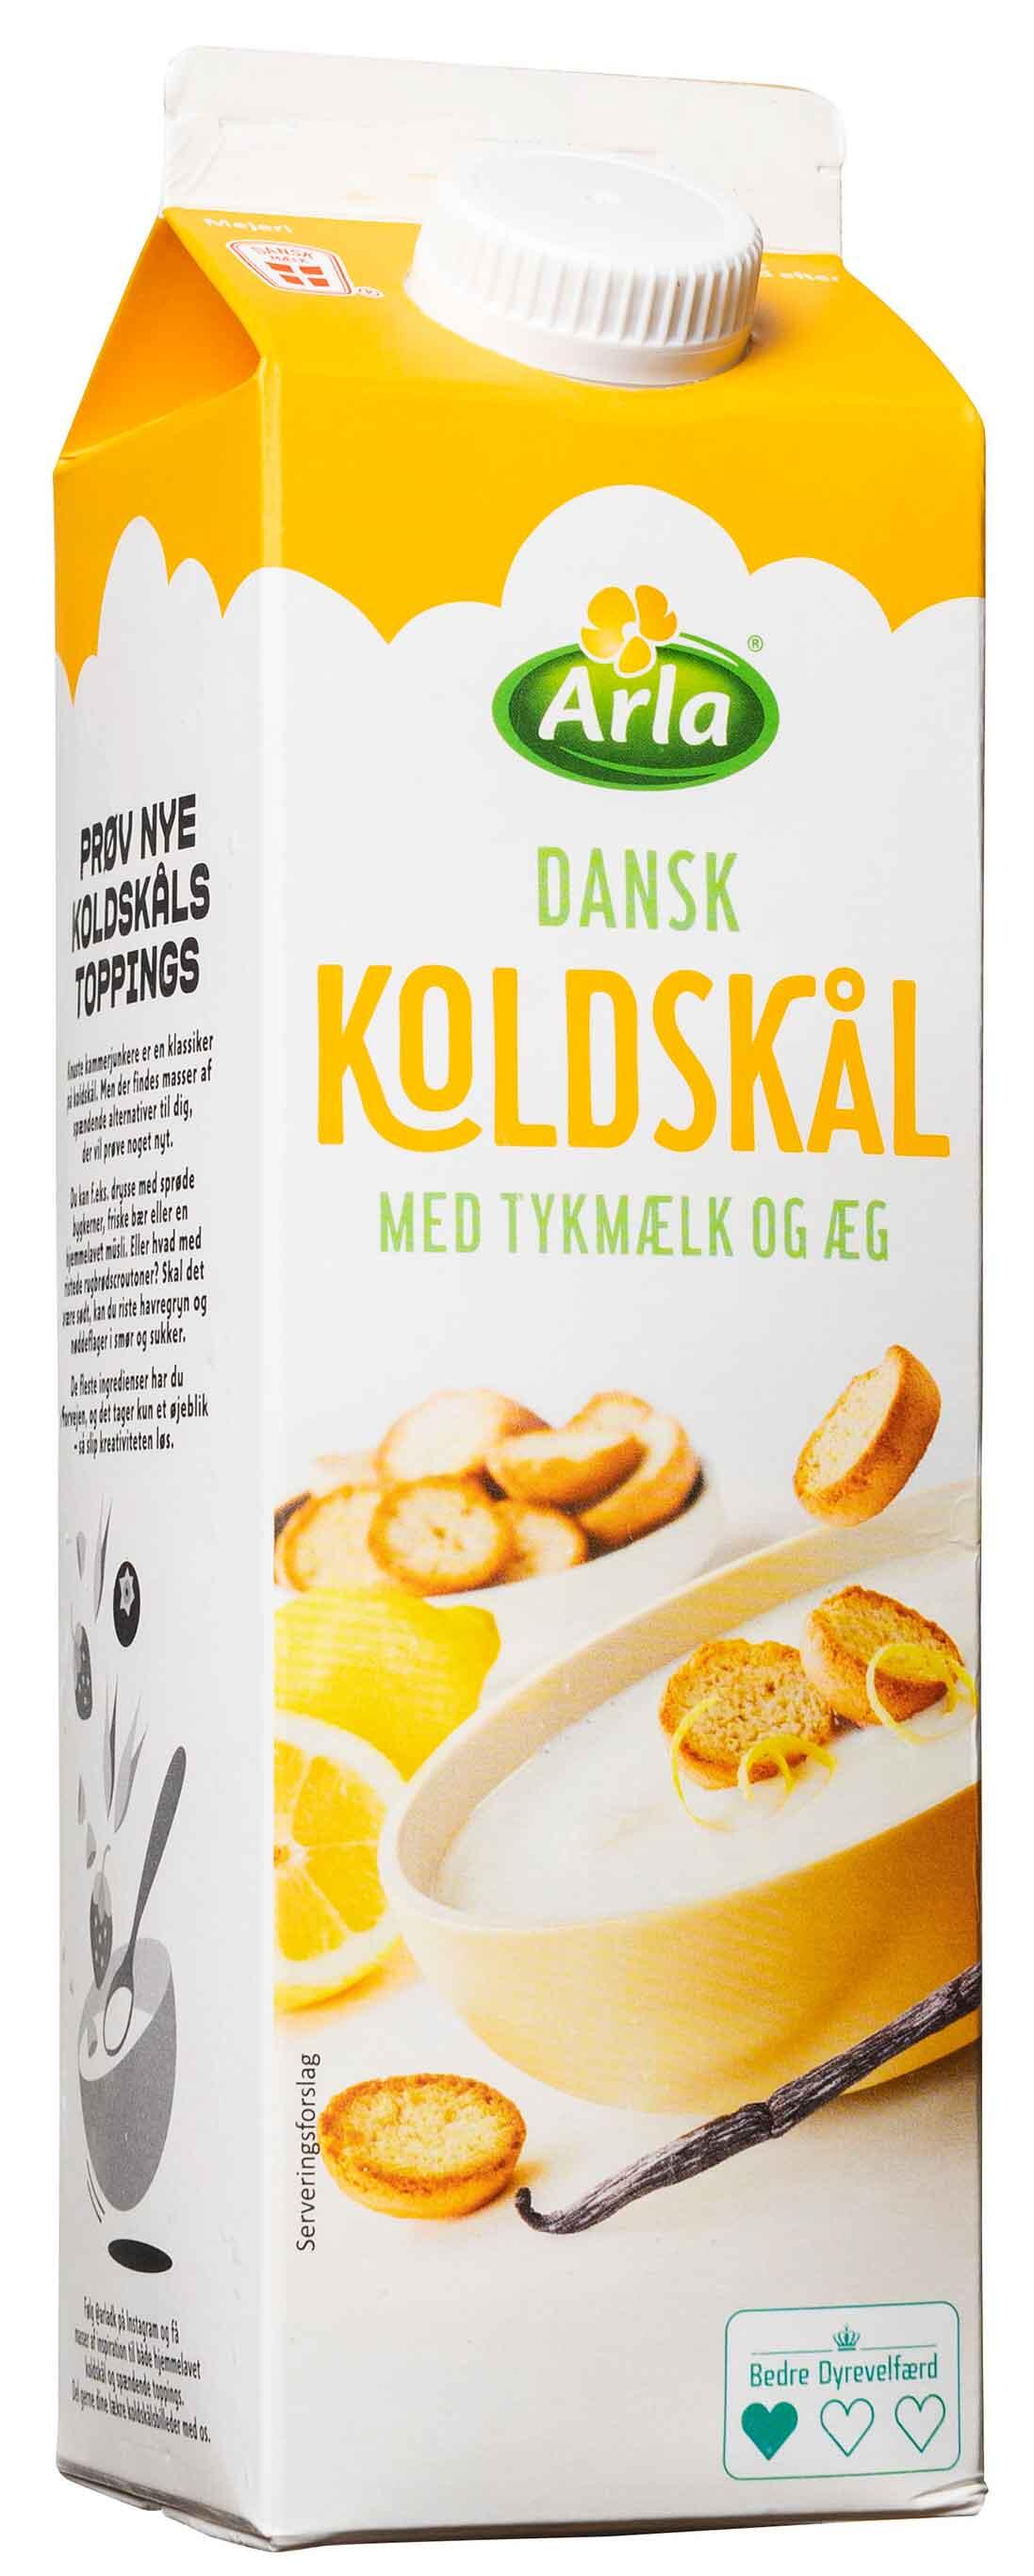 Dansk koldskål med tykmælk og æg Arla